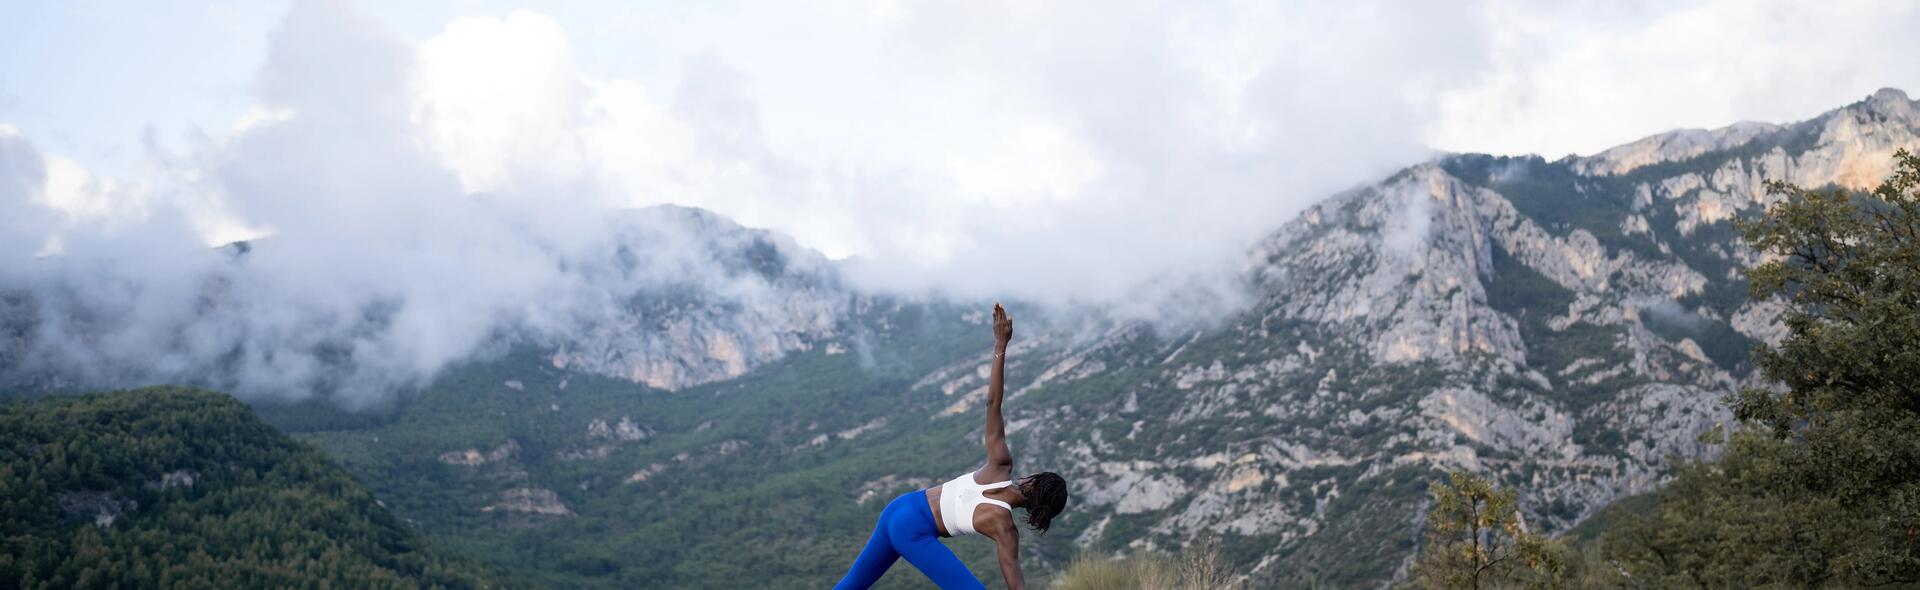 La nouvelle gamme Yoga éco-conçue by Decathlon - Blog Je débute le yoga